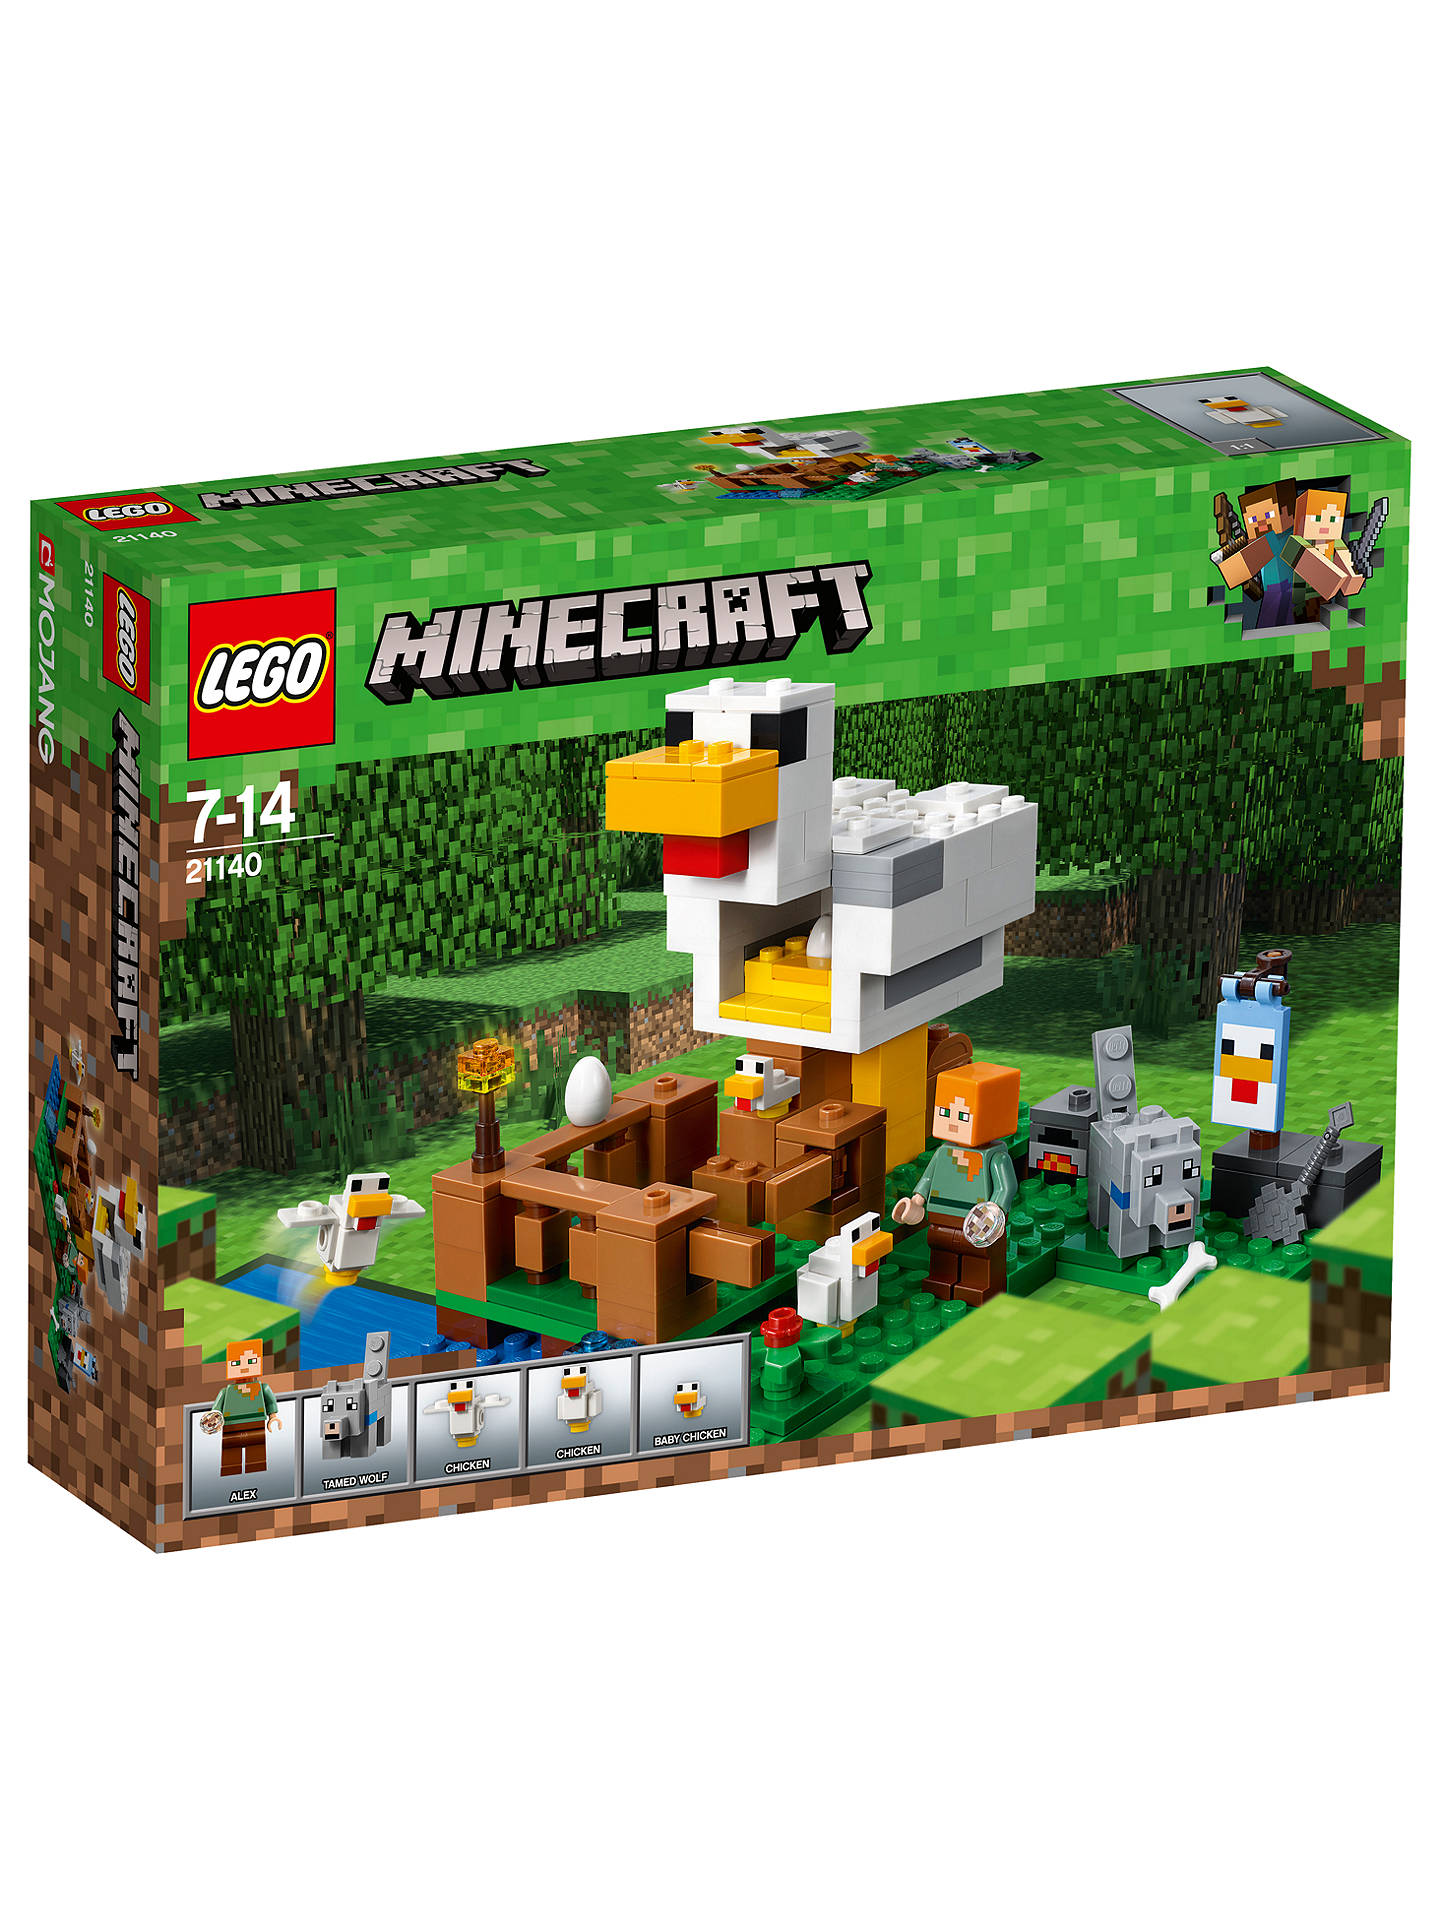 Lego Minecraft 21140 The Chicken Coop